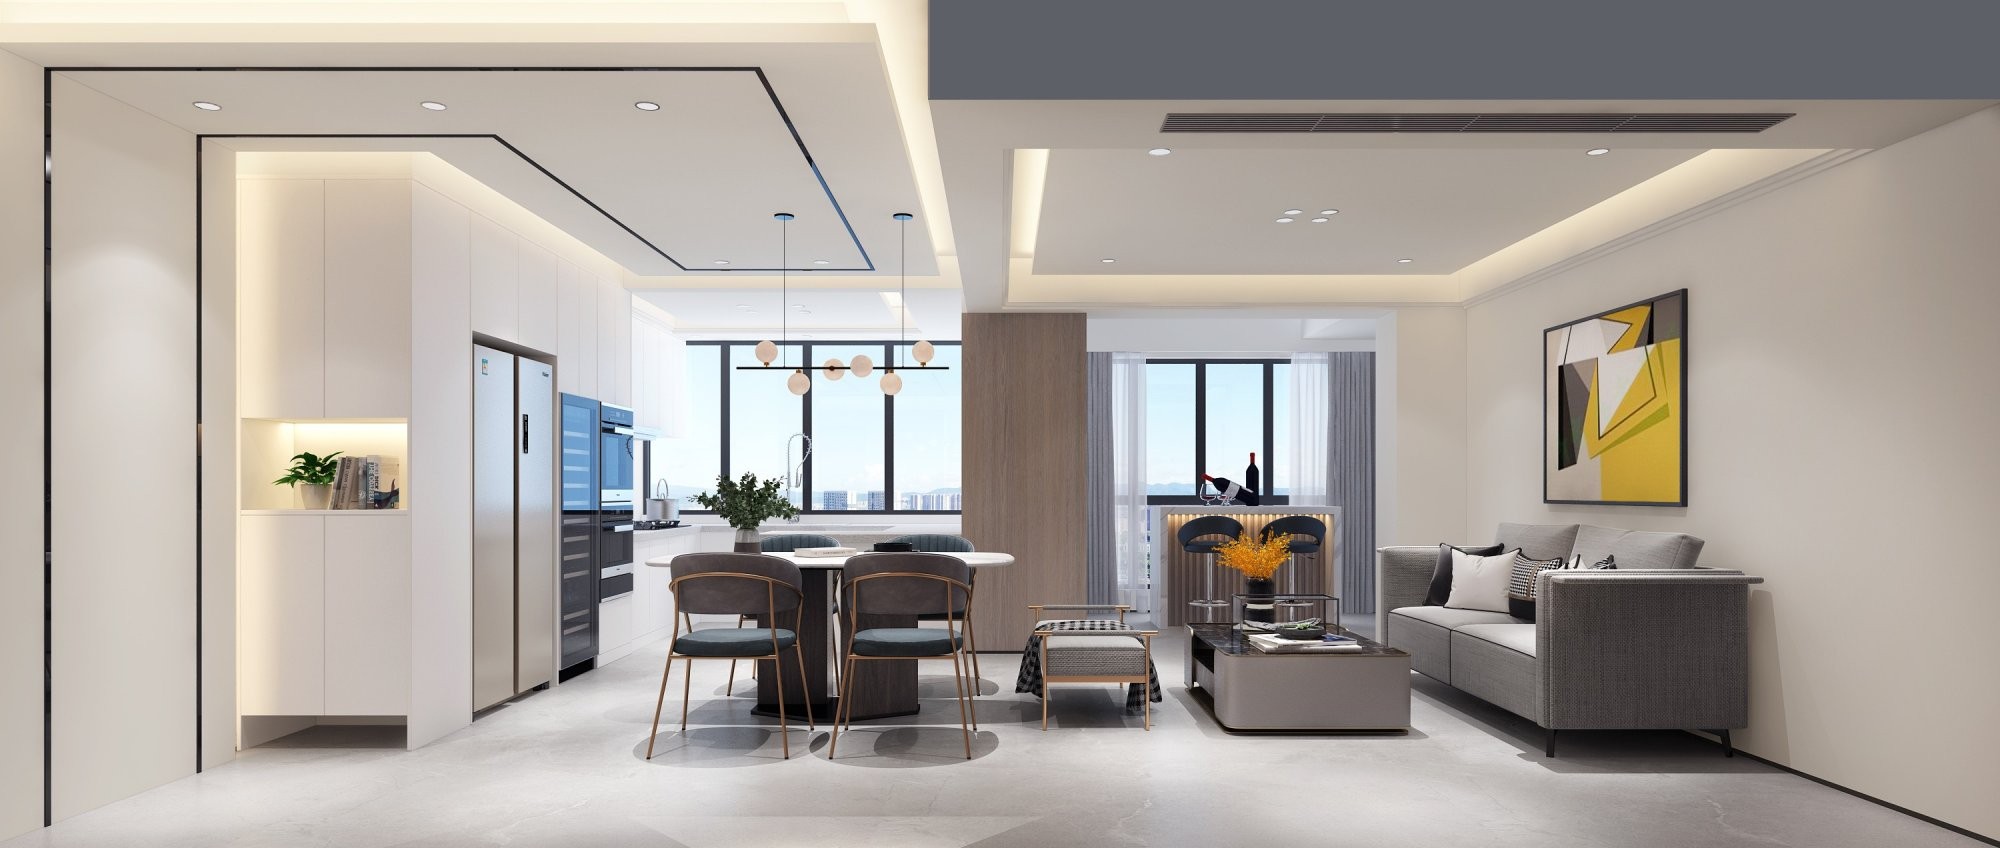 栖游记170平方米现代简约风格复式户型客餐厅一体装修效果图